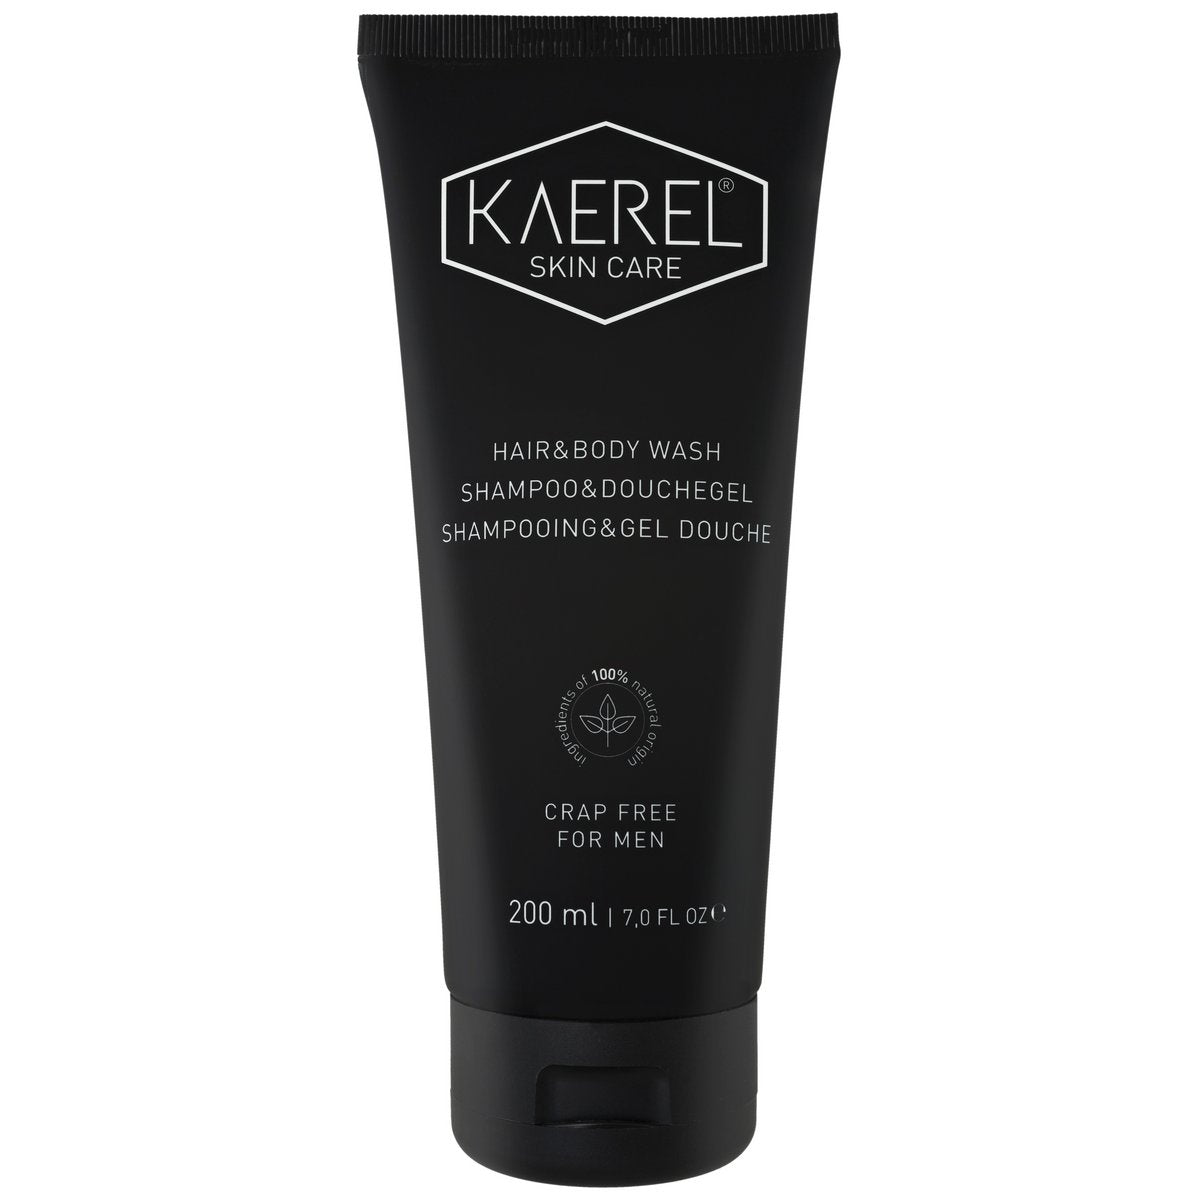 Kaerel Skin Care shampoo & douchegel 200ml